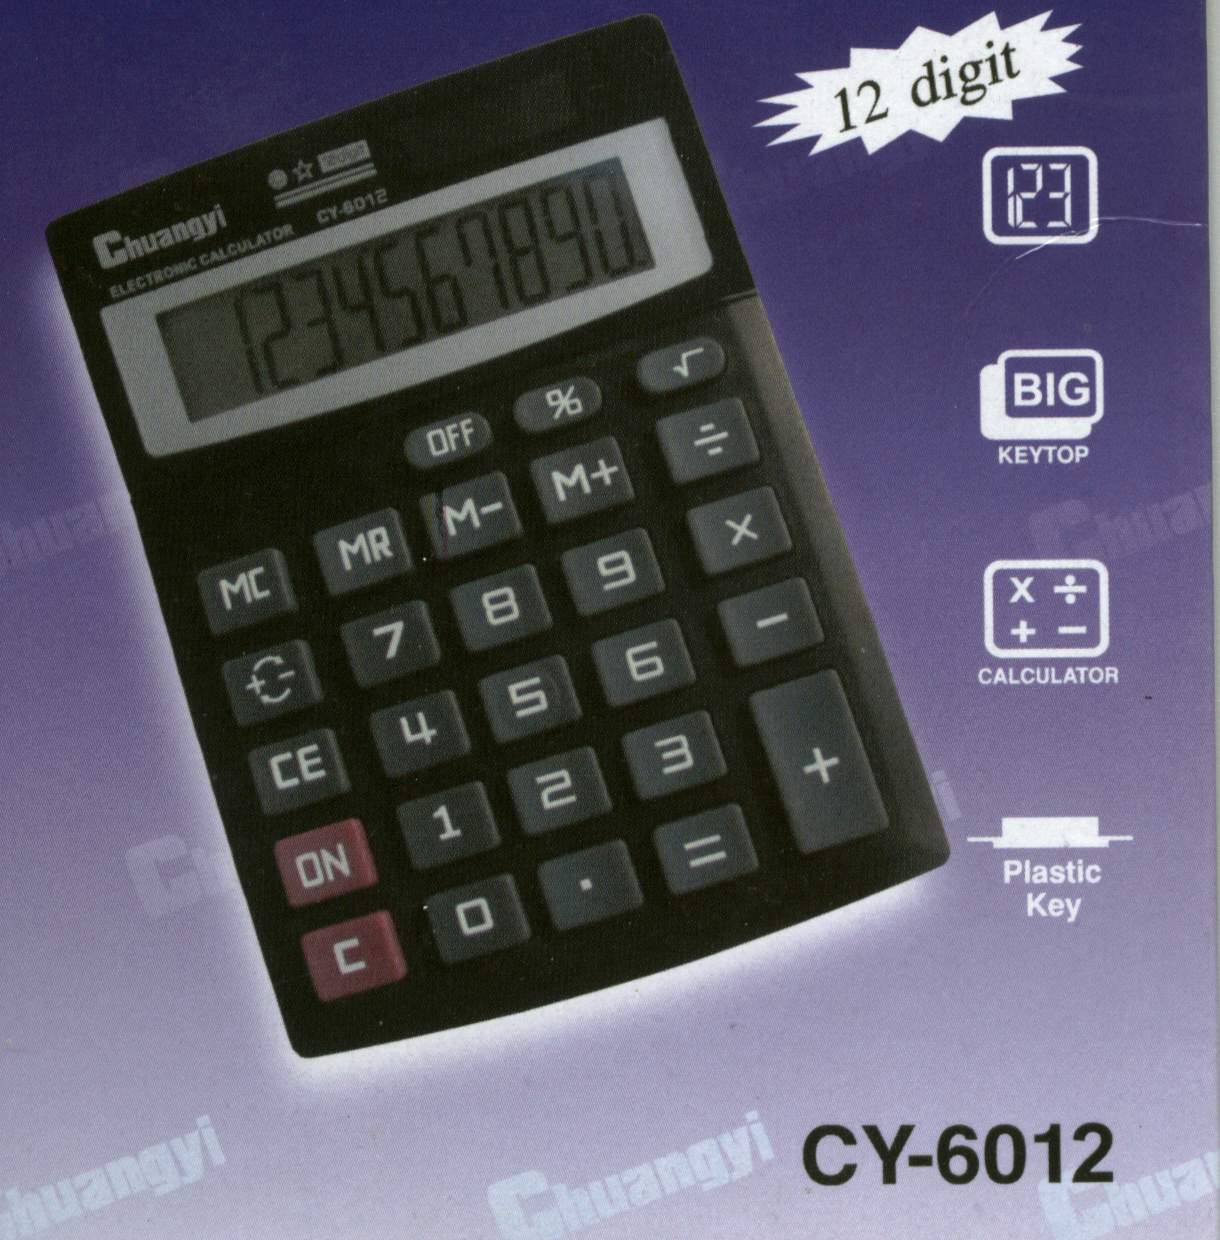 cy-6012.jpg